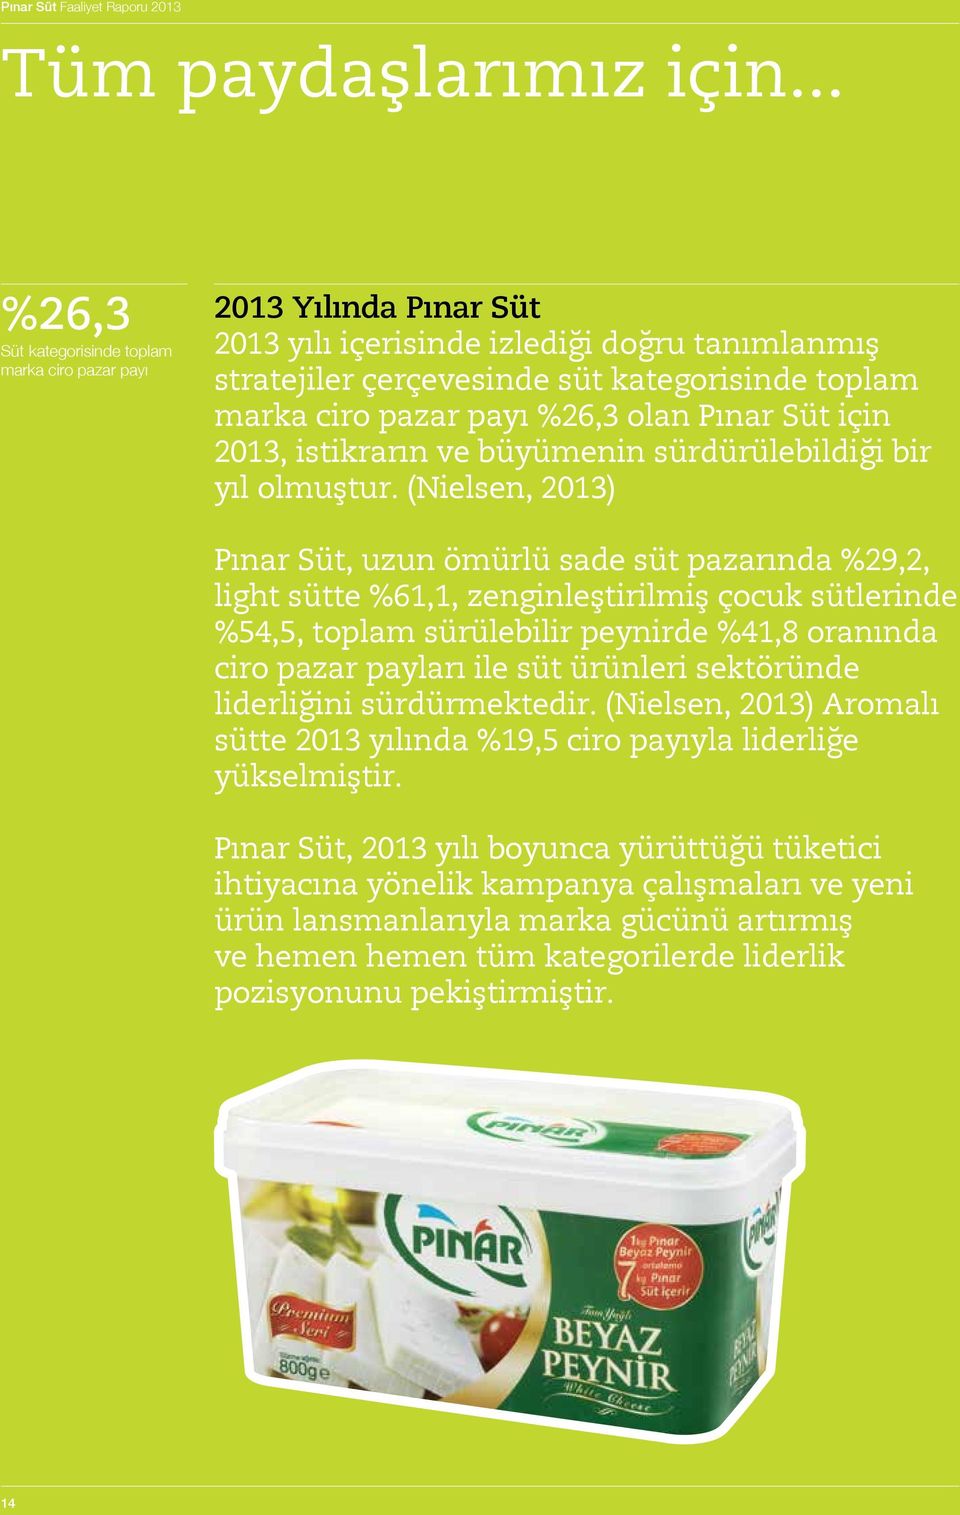 %26,3 olan Pınar Süt için 2013, istikrarın ve büyümenin sürdürülebildiği bir yıl olmuştur.